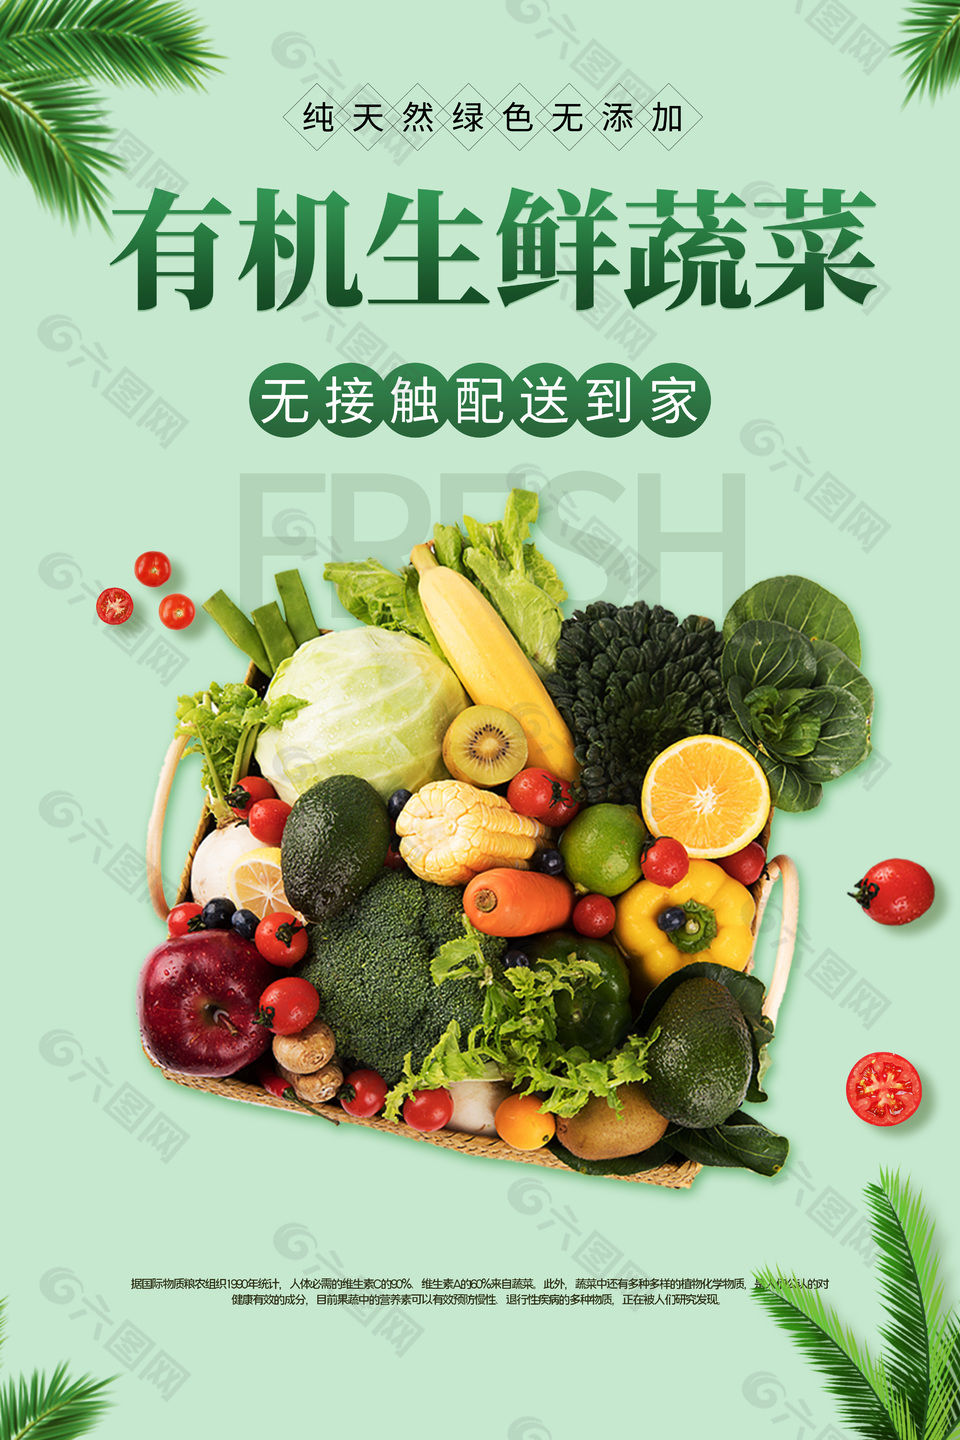 浅绿主题有机生鲜蔬菜海报设计大全